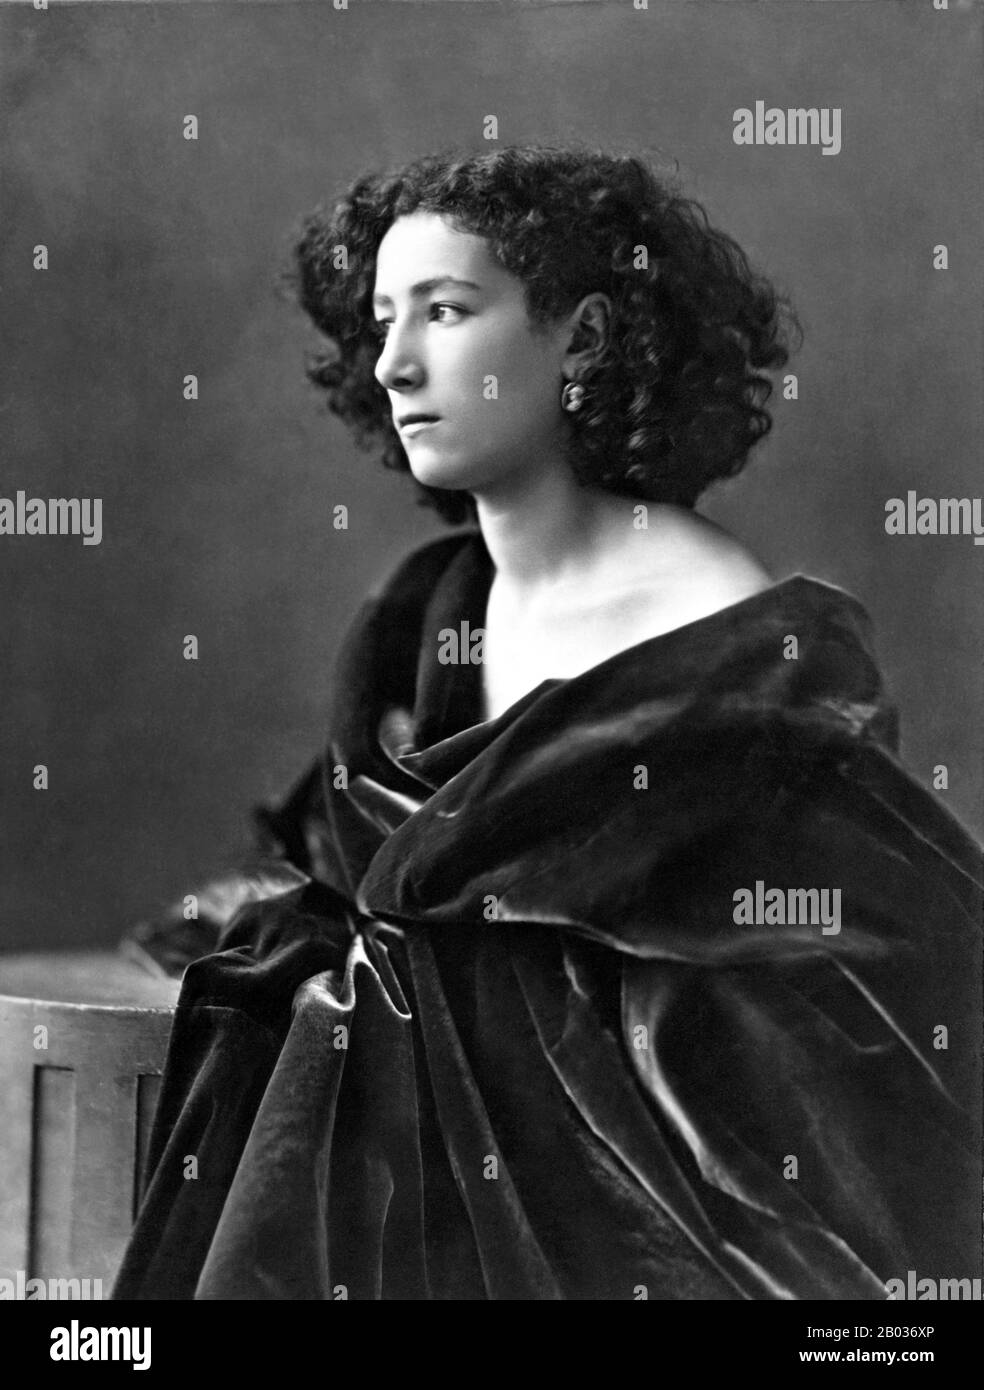 Sarah Bernhardt (Parigi, 23 ottobre 1844 – Parigi, 26 marzo 1923) è stata una . È stata definita "l'attrice più famosa del mondo che abbia mai conosciuto" ed è considerata uno dei migliori attori di tutti i tempi. Bernhardt ha fatto la sua fama sulle tappe della Francia nella 1870s, all'inizio del periodo Belle Epoque, e presto era in domanda in Europa e nelle Americhe. Ha sviluppato una reputazione come attrice drammatica sublime e tragedienne, guadagnando il soprannome di 'la Divina Sarah'. Nella sua carriera successiva ha starred in alcuni dei film più primi mai prodotti. Foto Stock